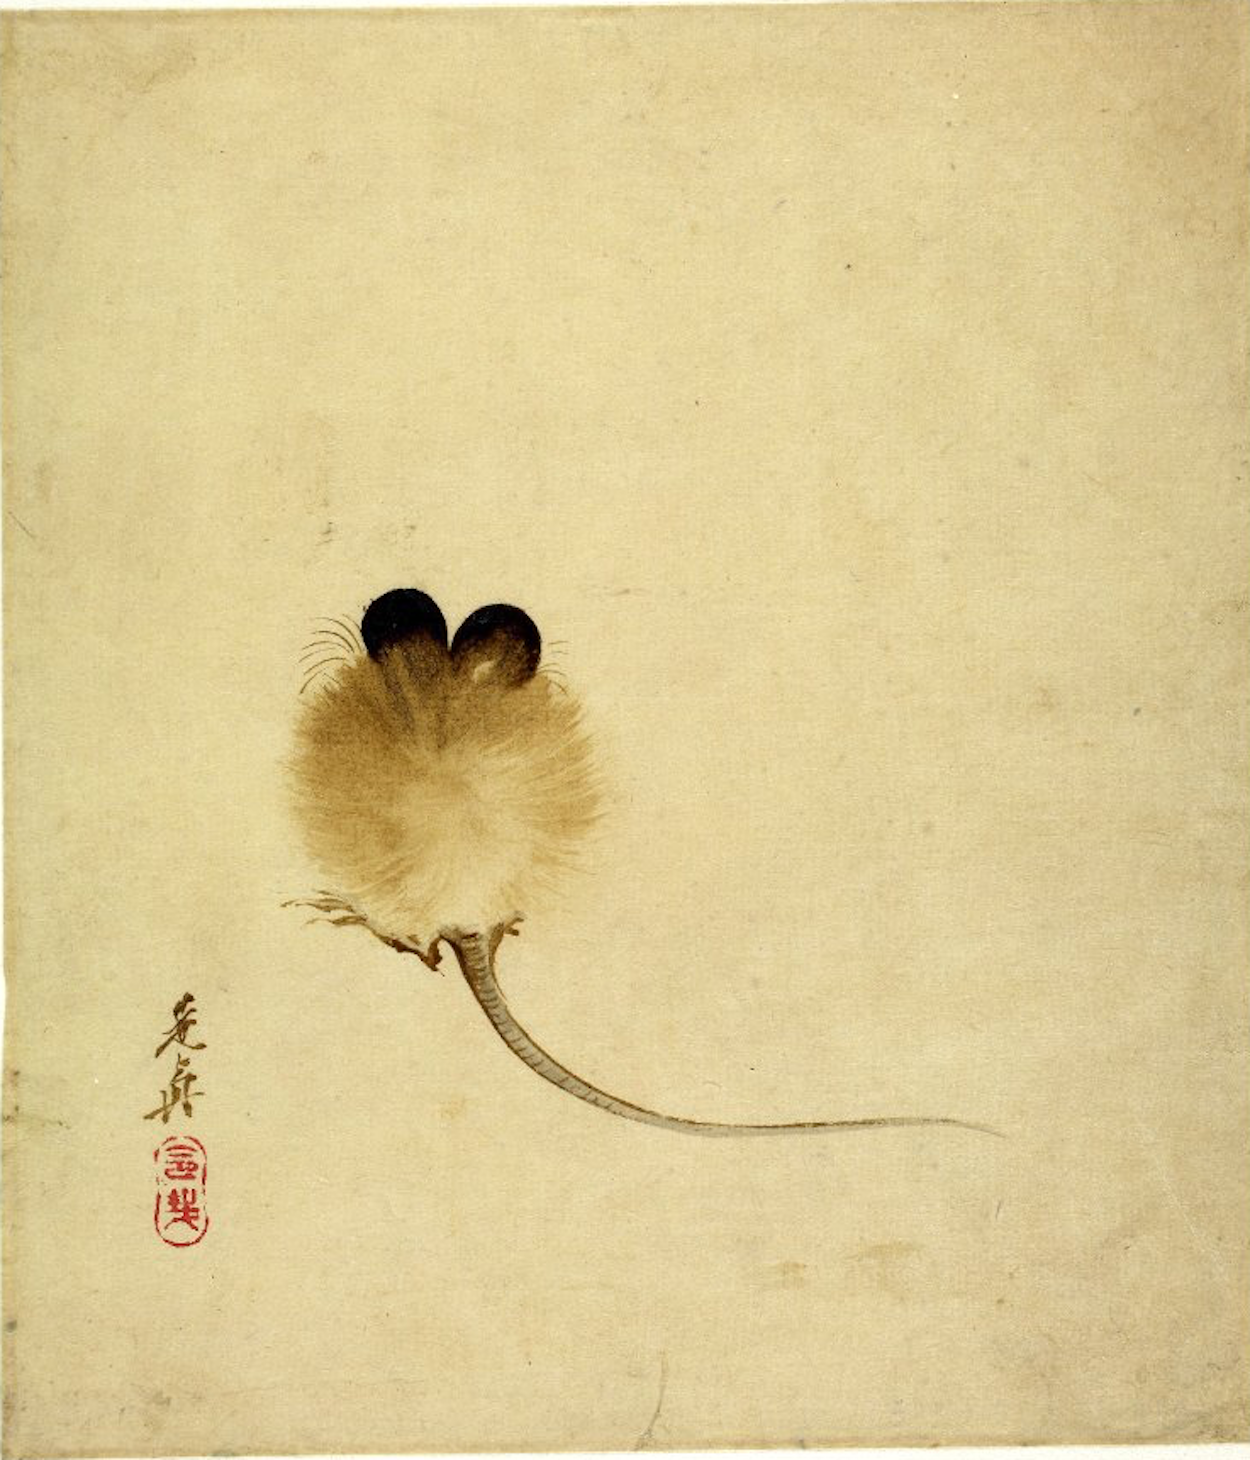 鼠 by Shibata Zeshin - 19世紀 - 19.4 x 16.8 公分 